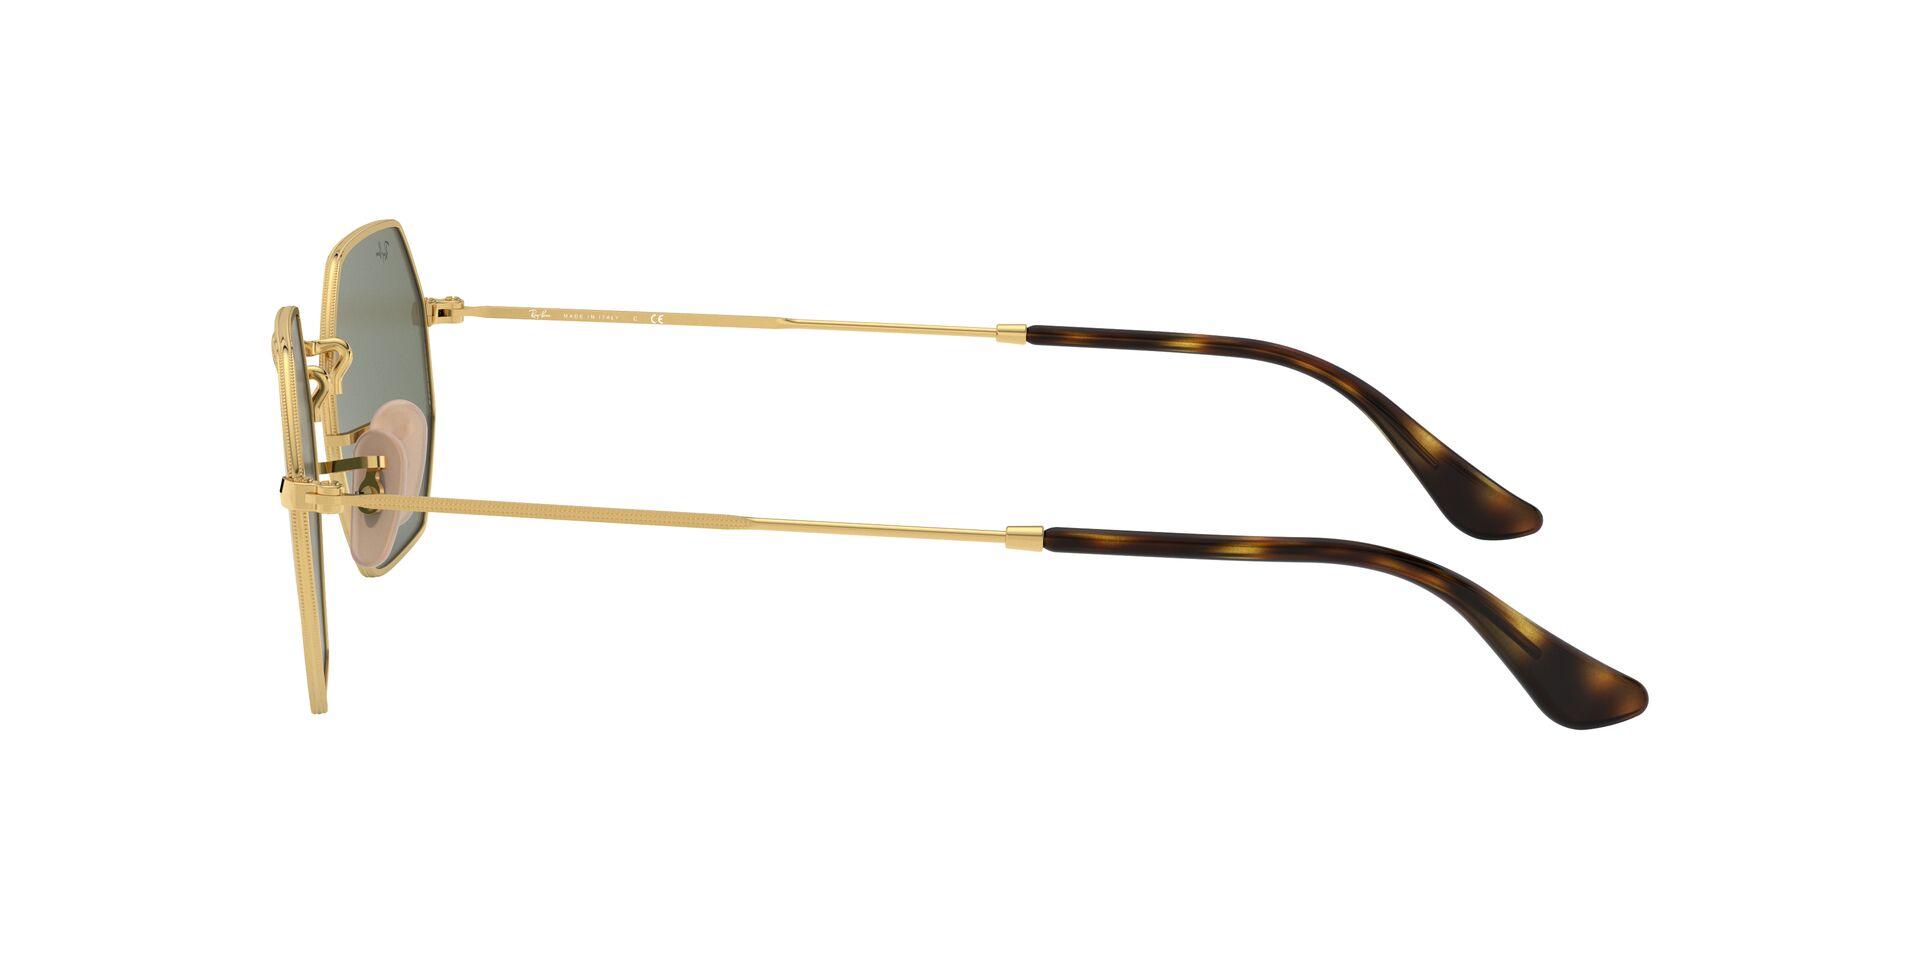 Mắt Kính RAY-BAN OCTAGONAL - RB3556N 1 -Sunglasses